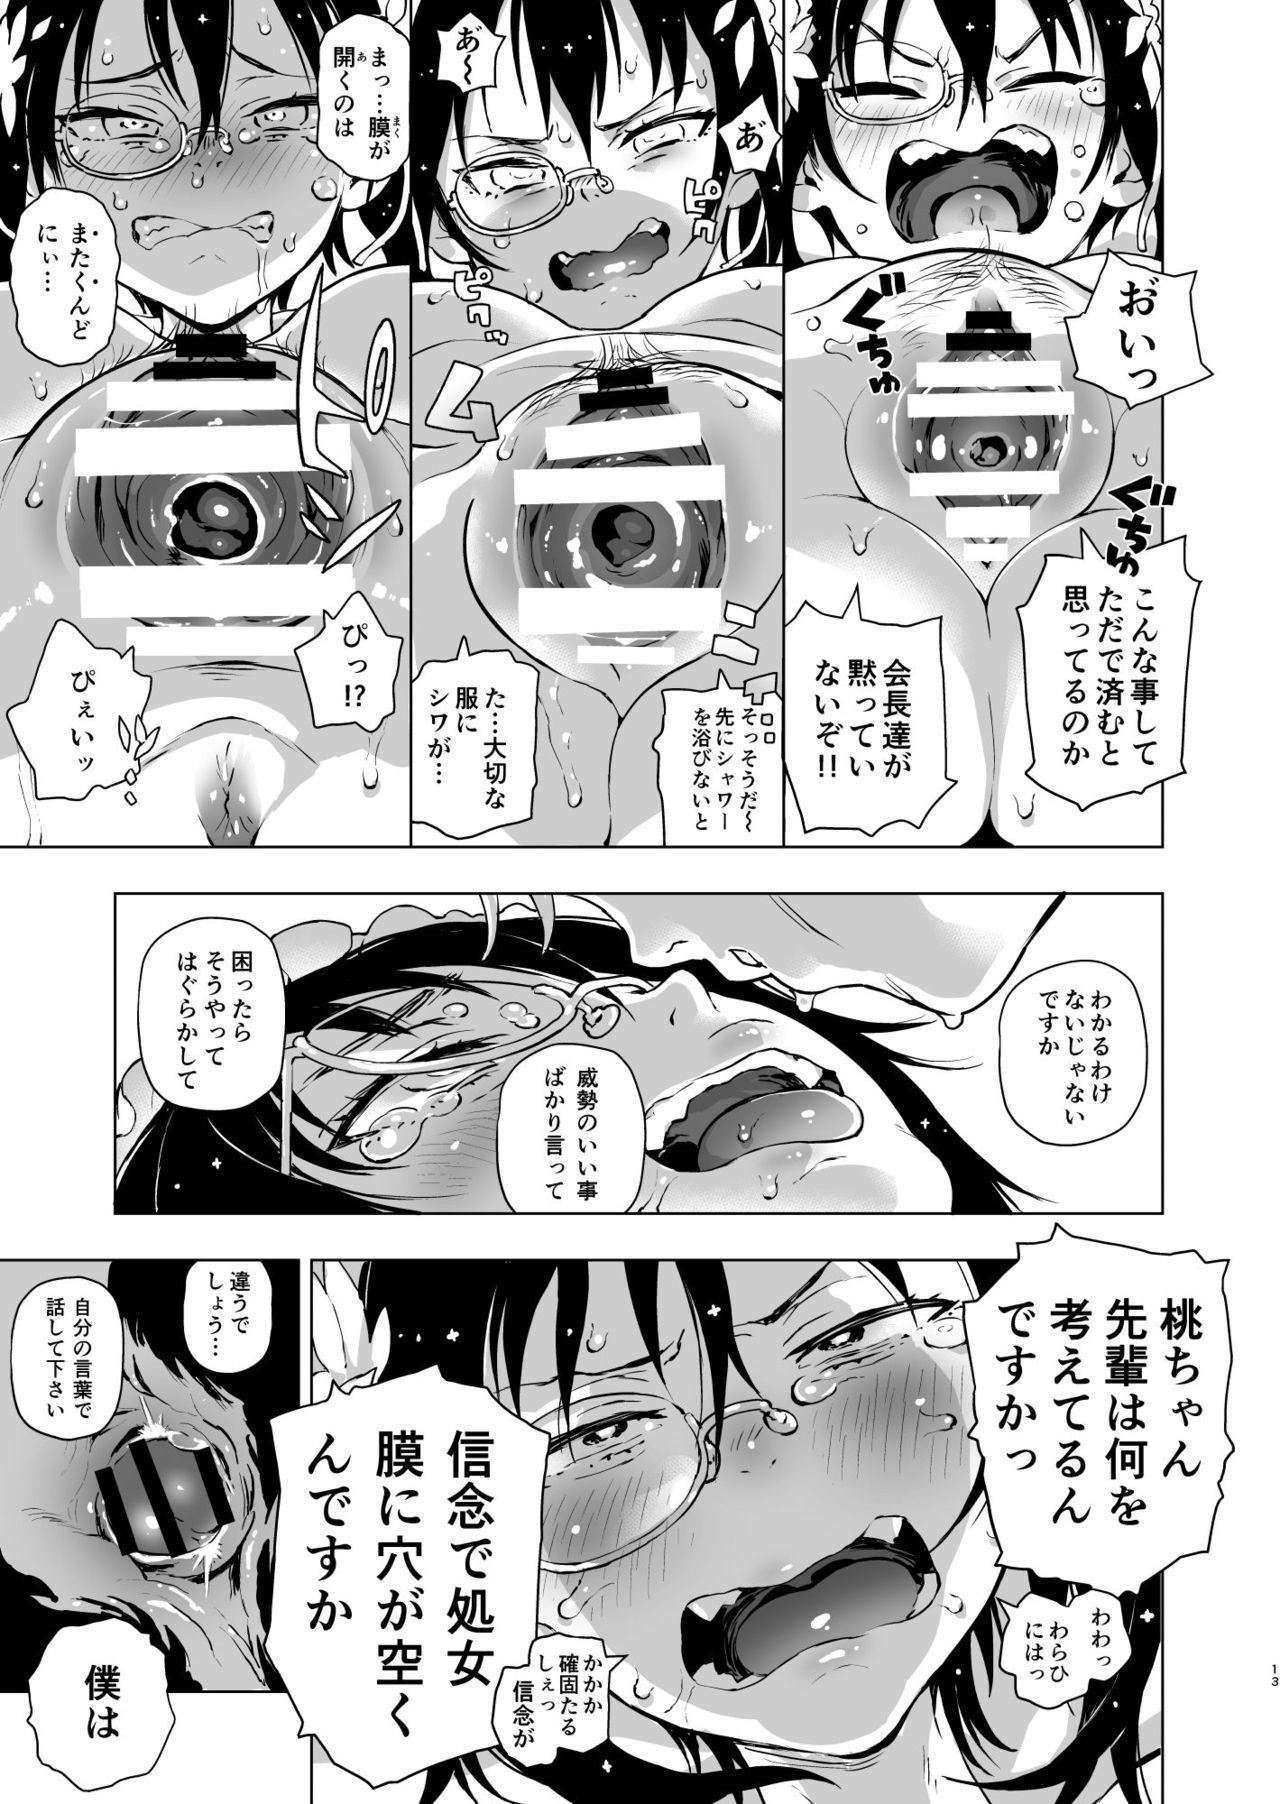 Her Nakanaide! Momo-chan!! - Girls und panzer Cam Sex - Page 12